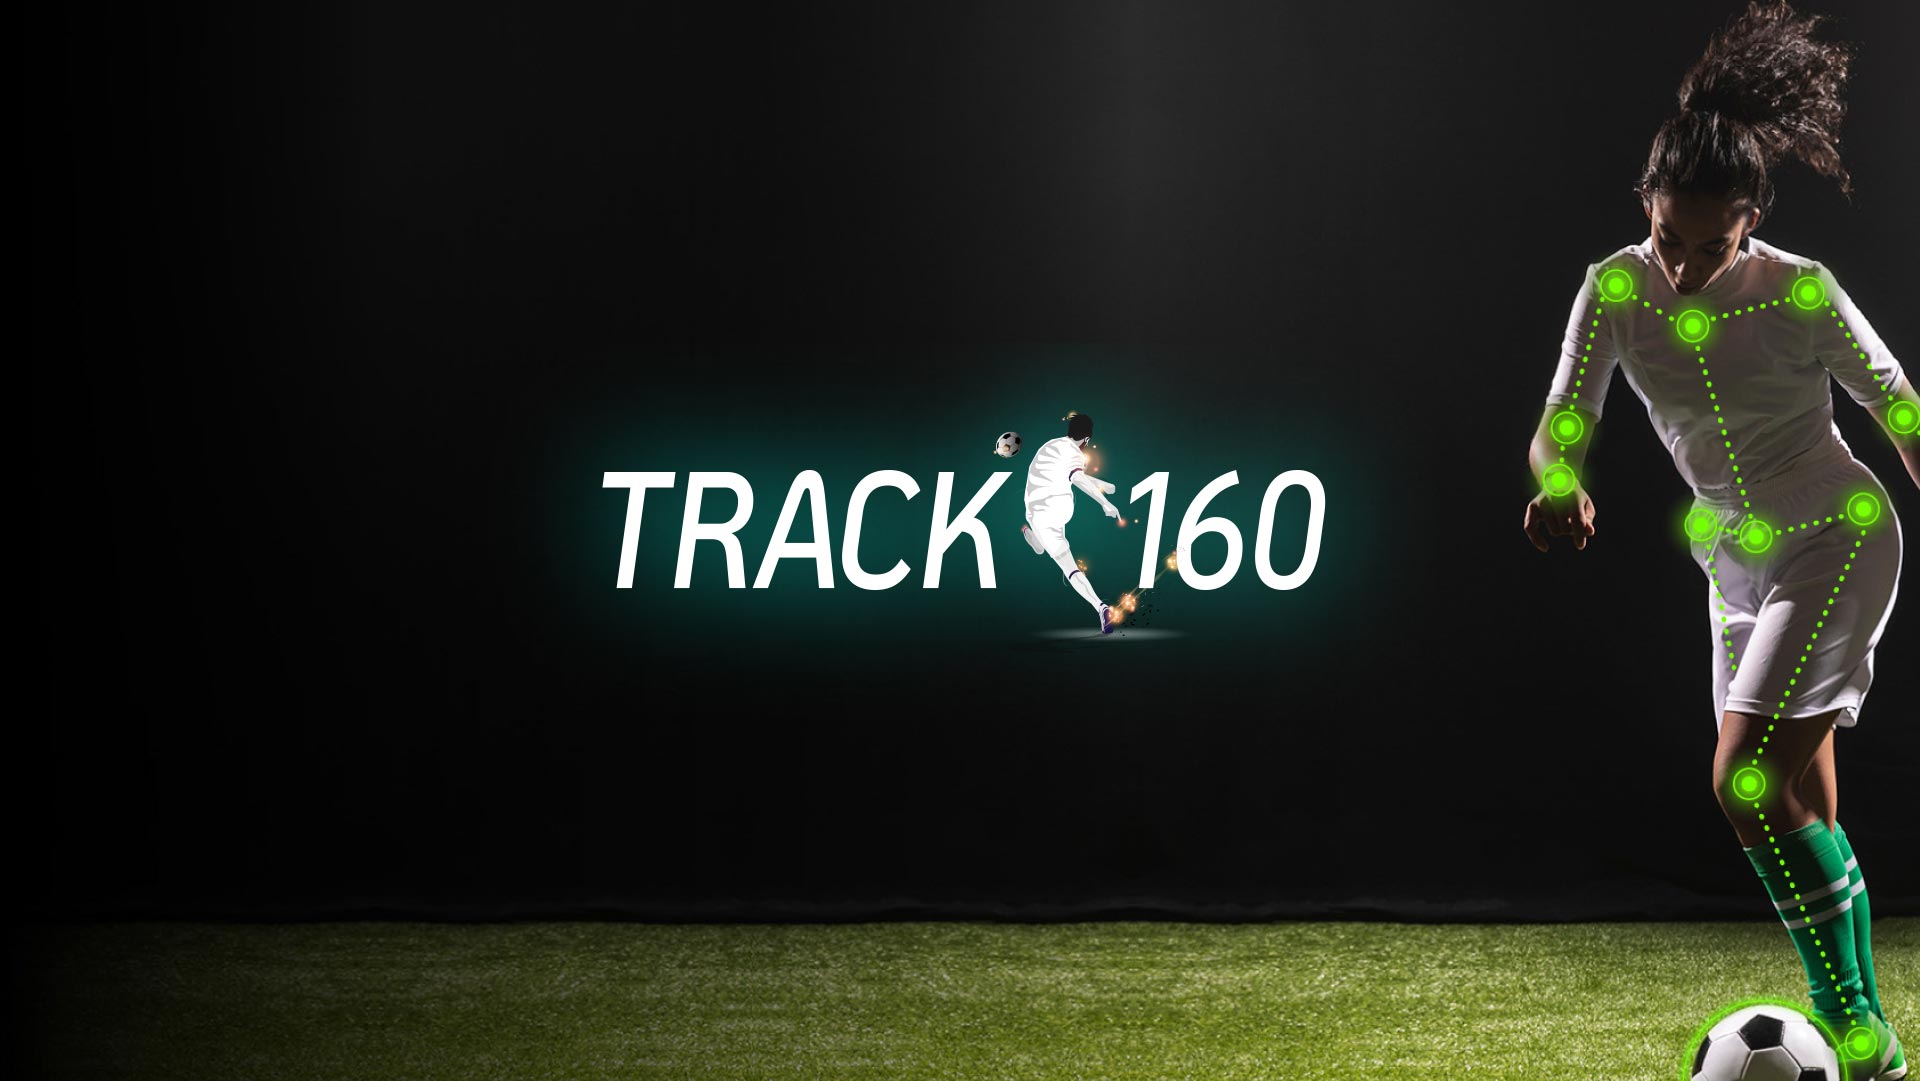 ダービースター Monta Track160 Hi Pod その他 さまざまなサッカー スポーツ関連商品の輸入販売 Nselection